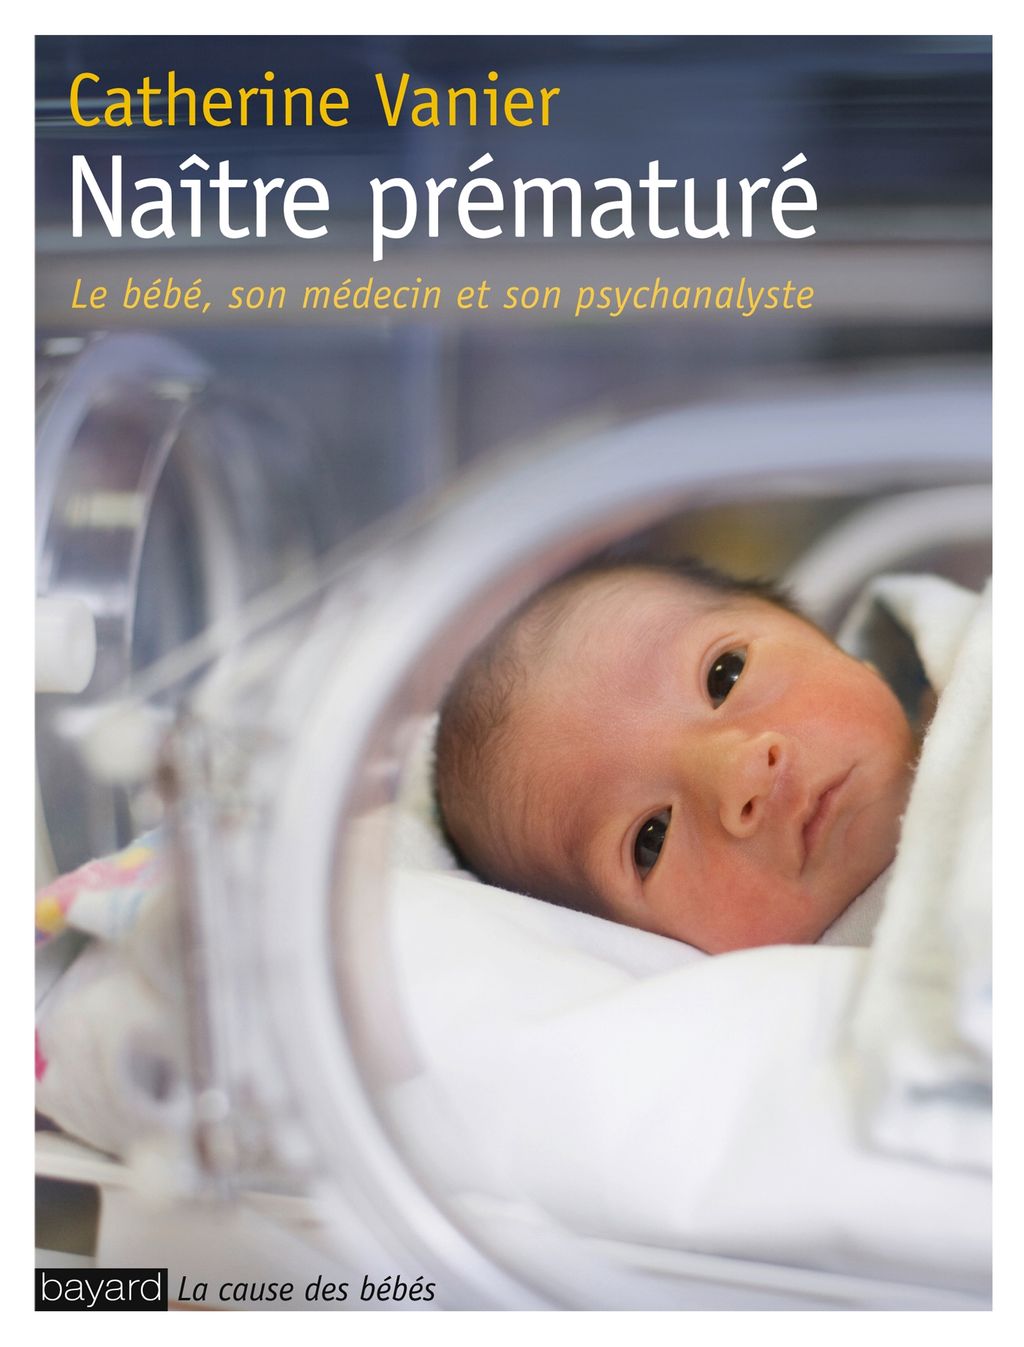 « NAITRE PREMATURE » cover